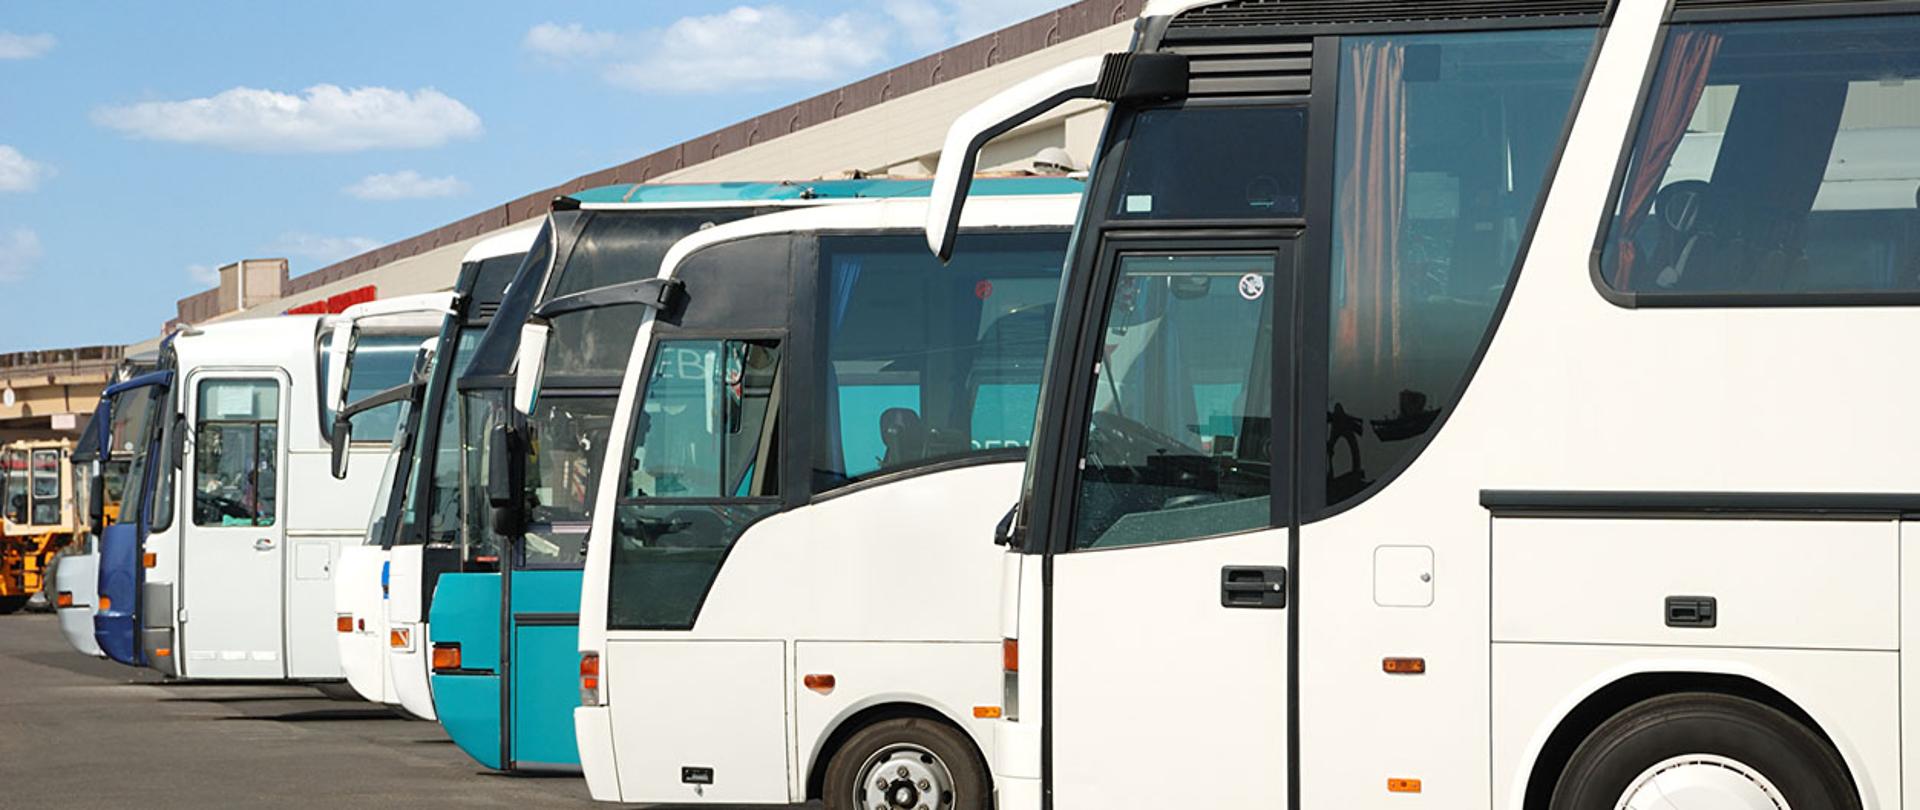 Na zdjęciu widać stojące na parkingu autobusy turystyczne